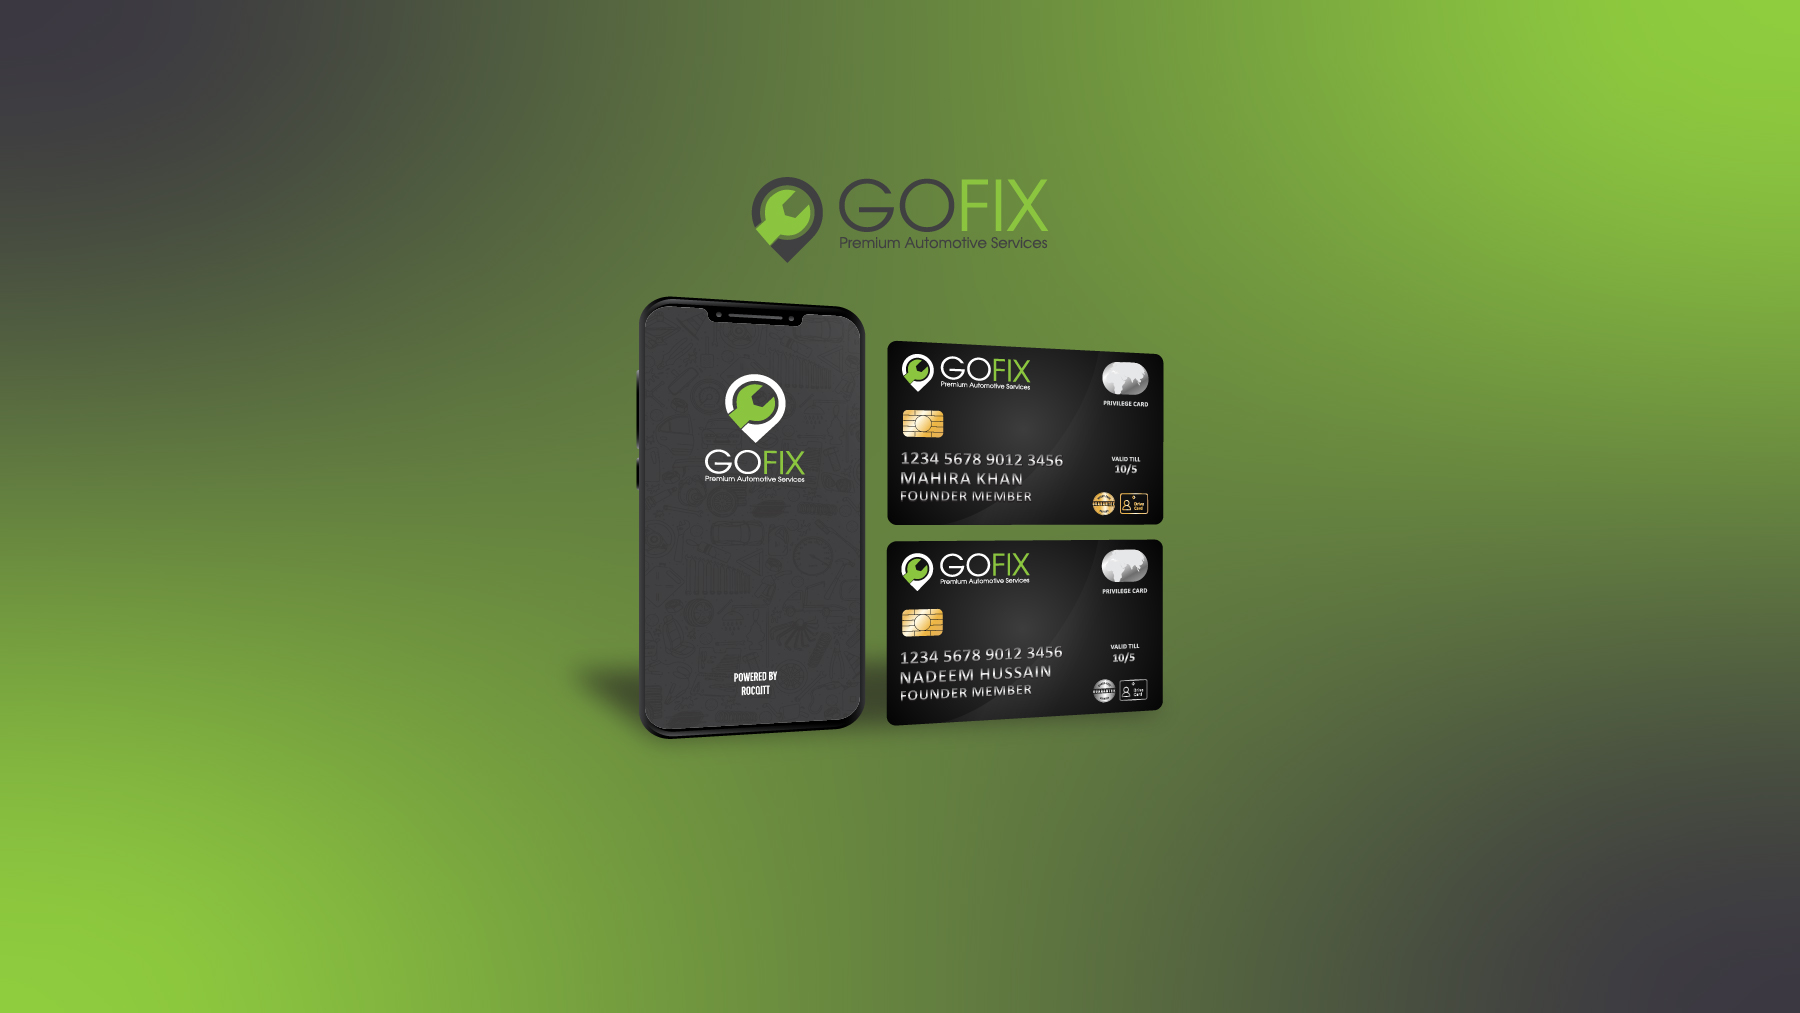 GoFix - Premium Automotive Services